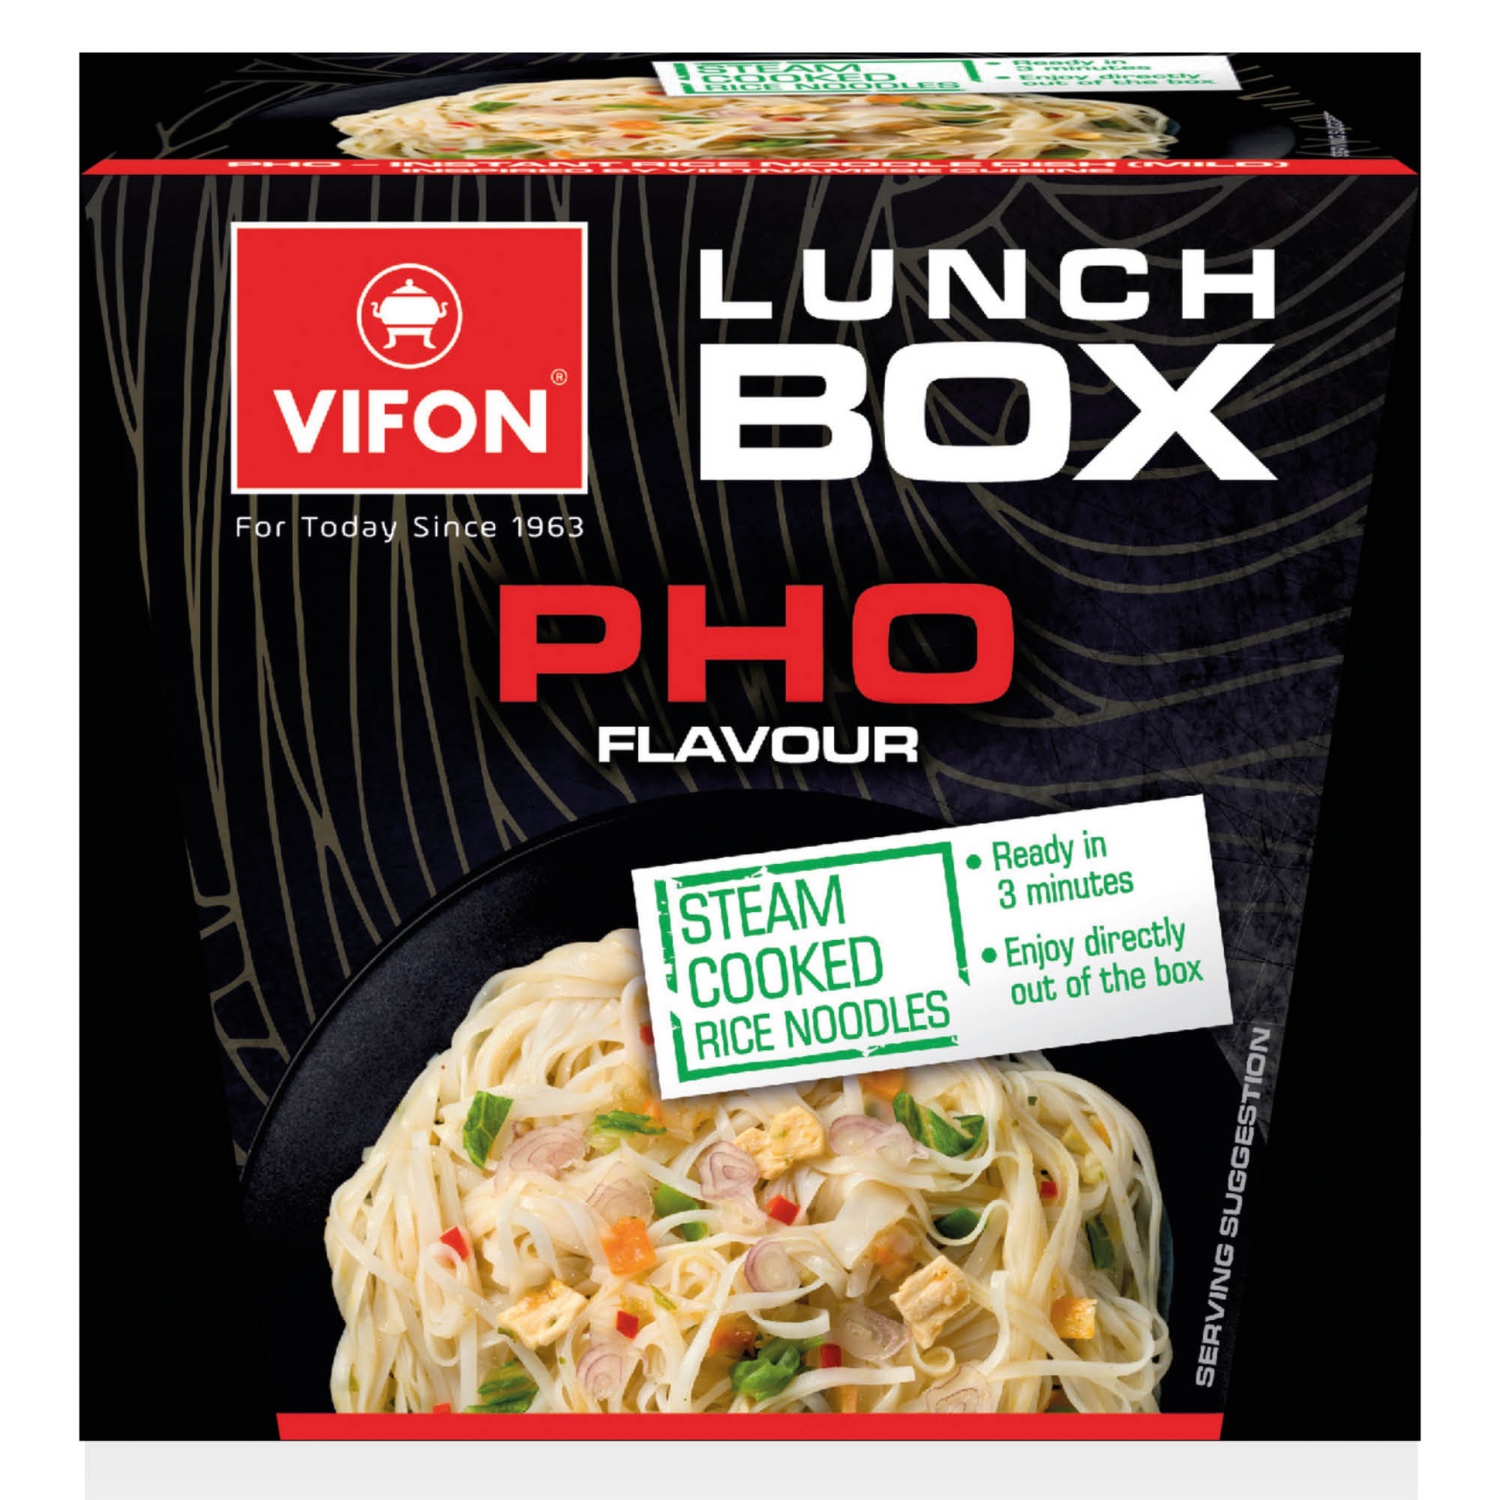 VIFON Lunch box instant rizstésztaétel, 85 g, pho ízesítésű